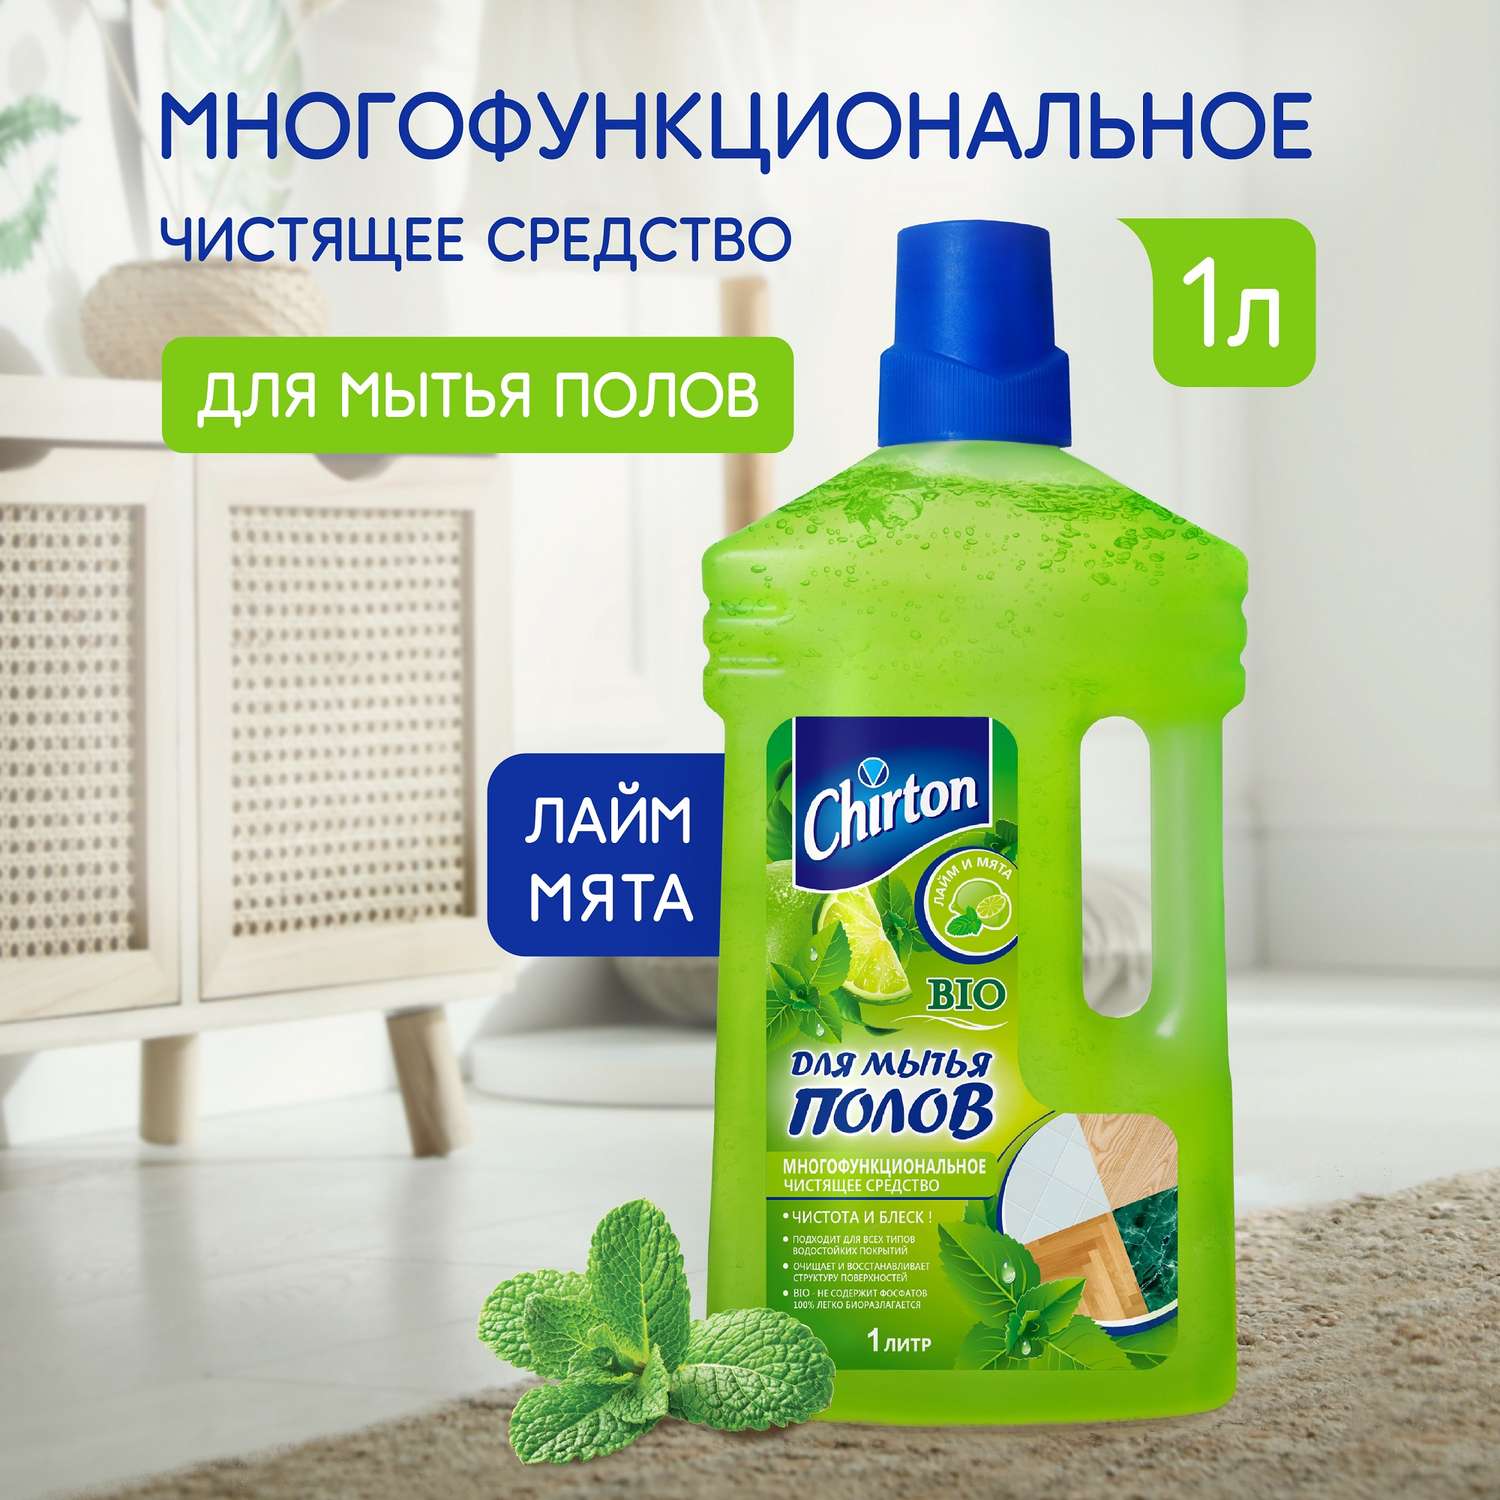 Чистящее средство Chirton для мытья полов Лайм и Мята 1 л - фото 1